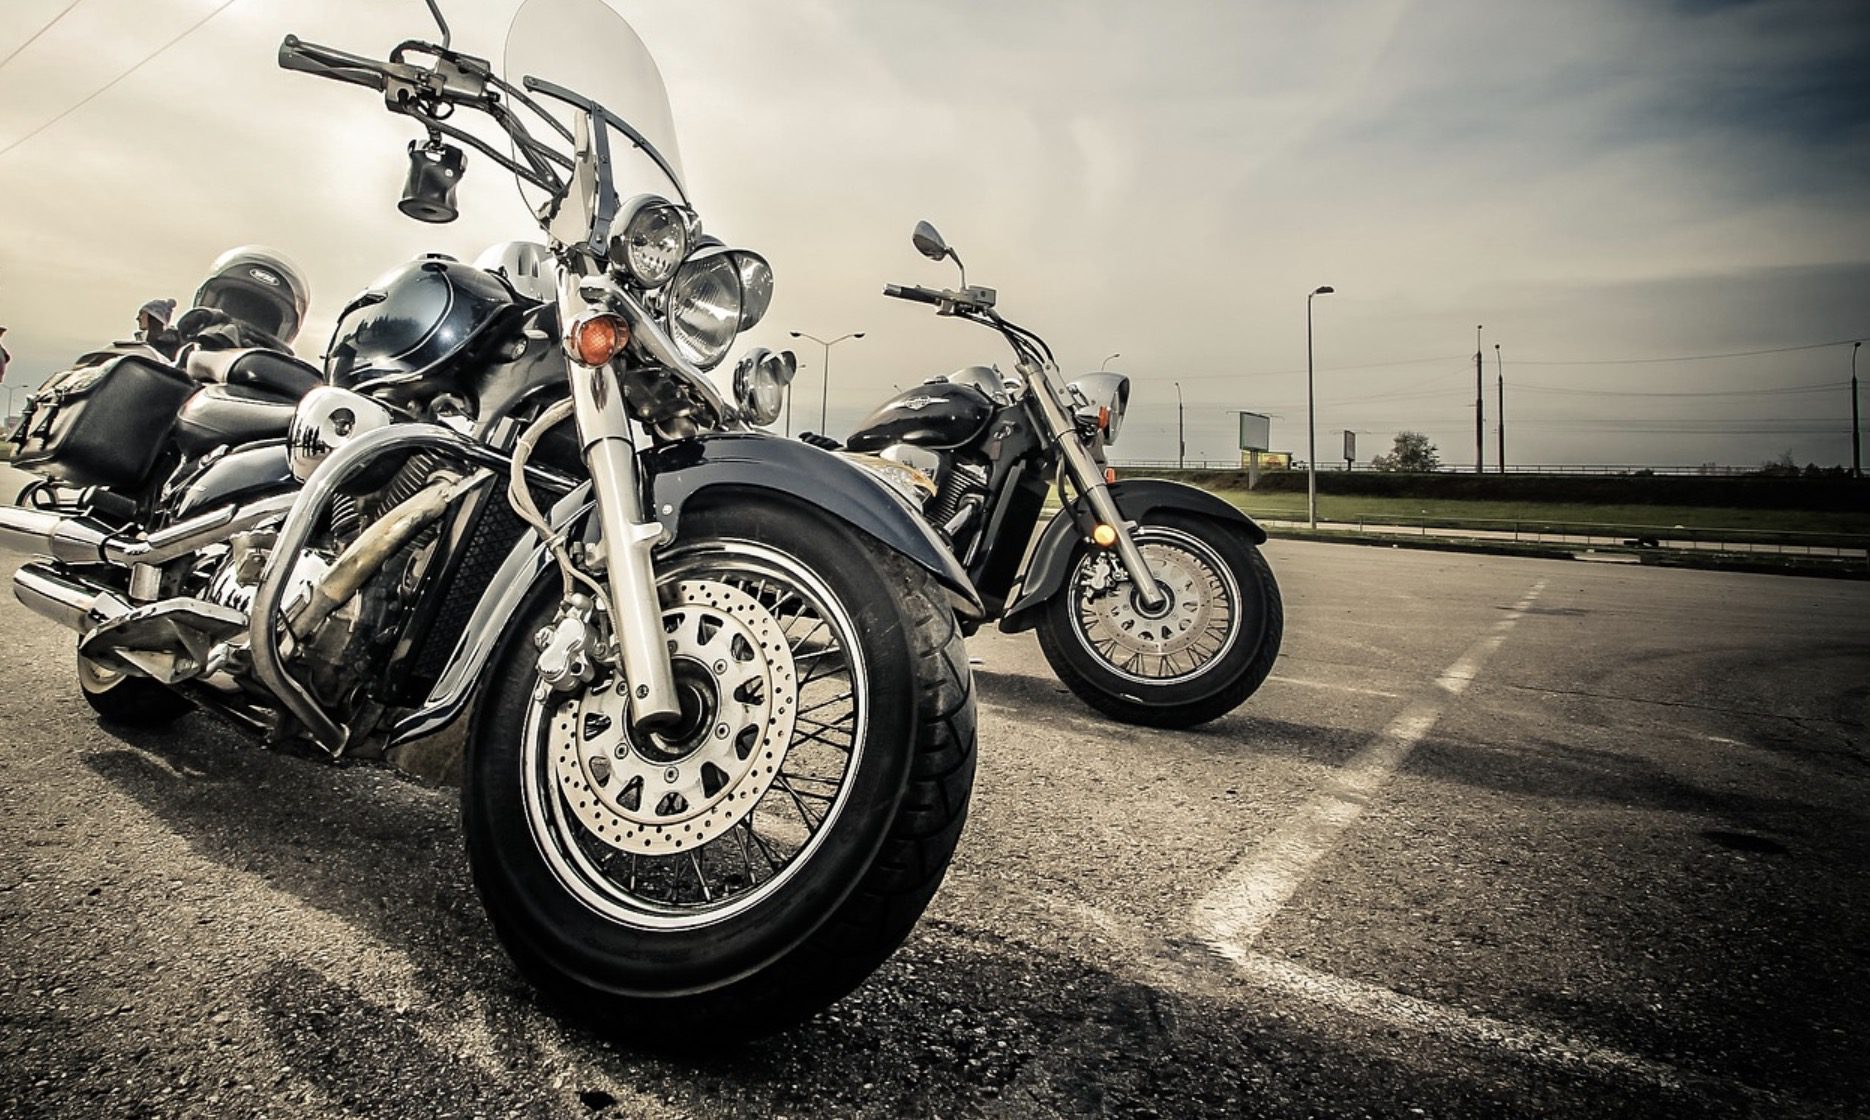 Comment choisir une assurance moto ?